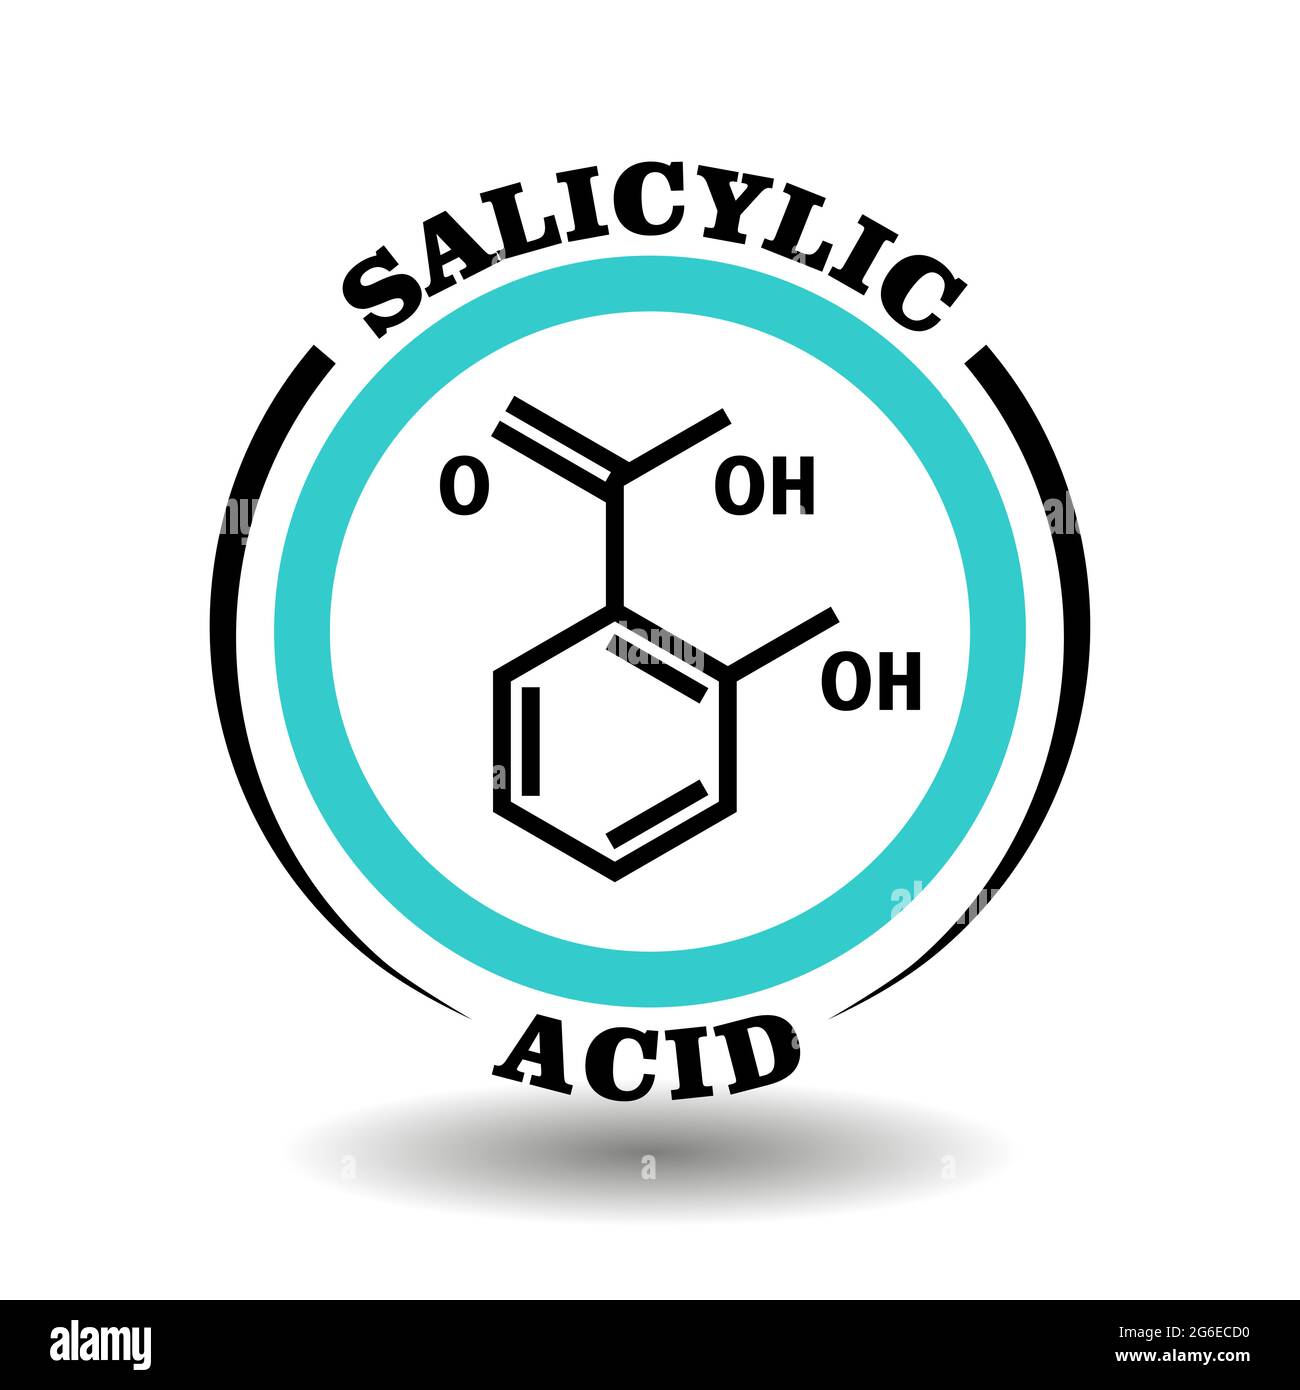 Cercle icône vecteur avec formule chimique de l'acide salicylique symbole pour l'emballage des signes de cosmétiques anti-acné, étiquettes de produit médical anti-grippe aspirine Illustration de Vecteur